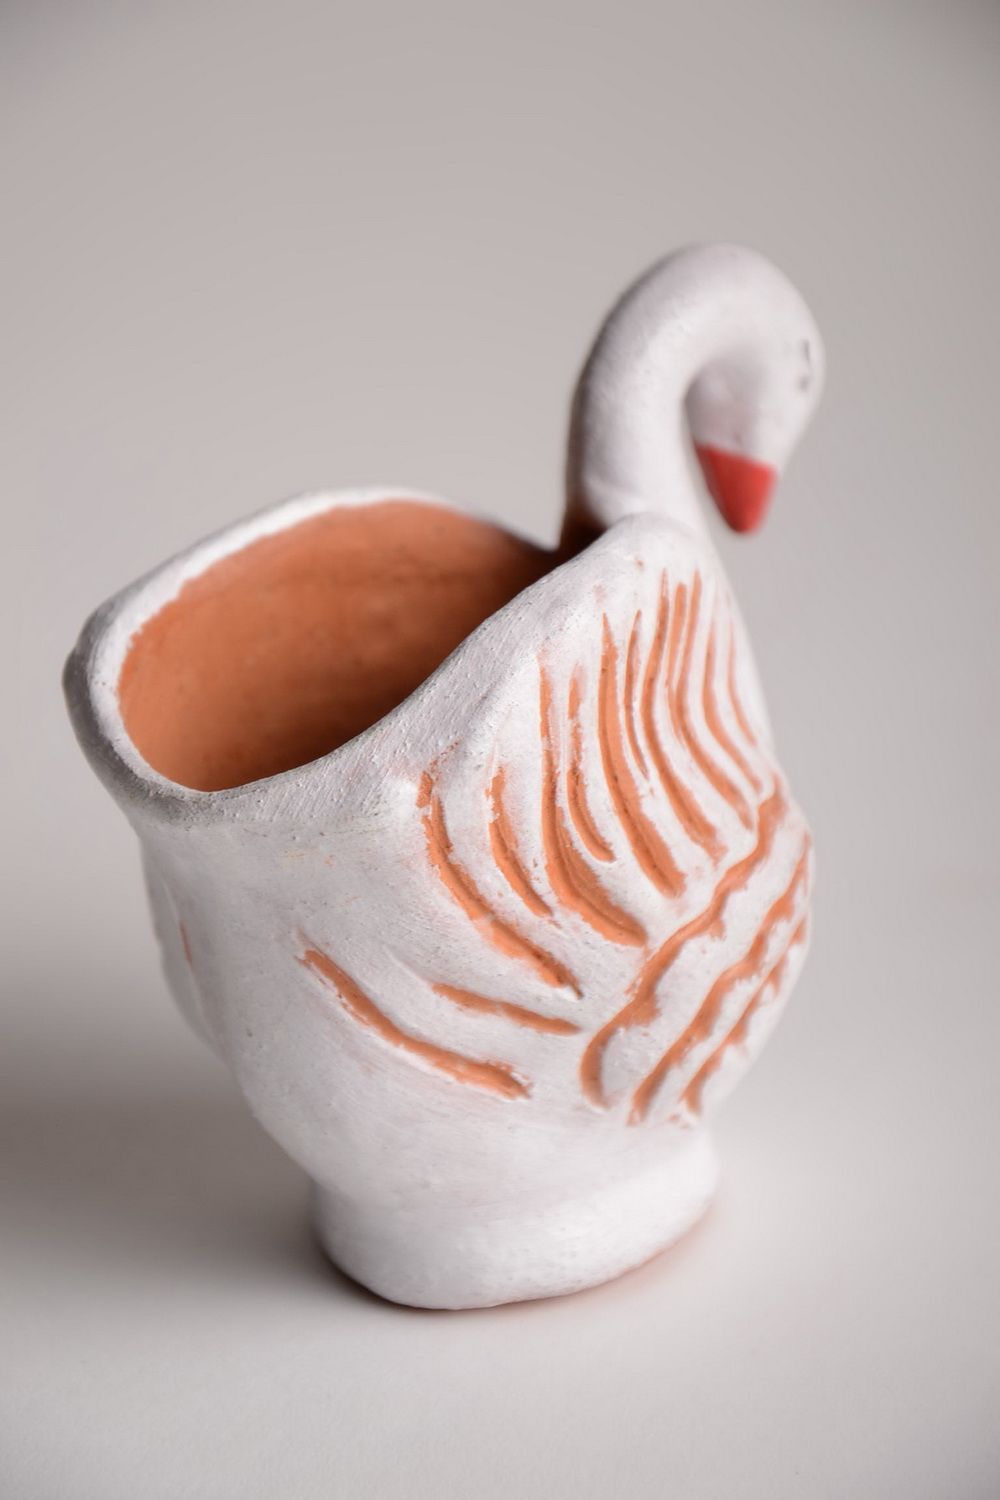 Keramik Vase für Kleinigkeiten in Form vom Schwan handmade aus Töpferton foto 3